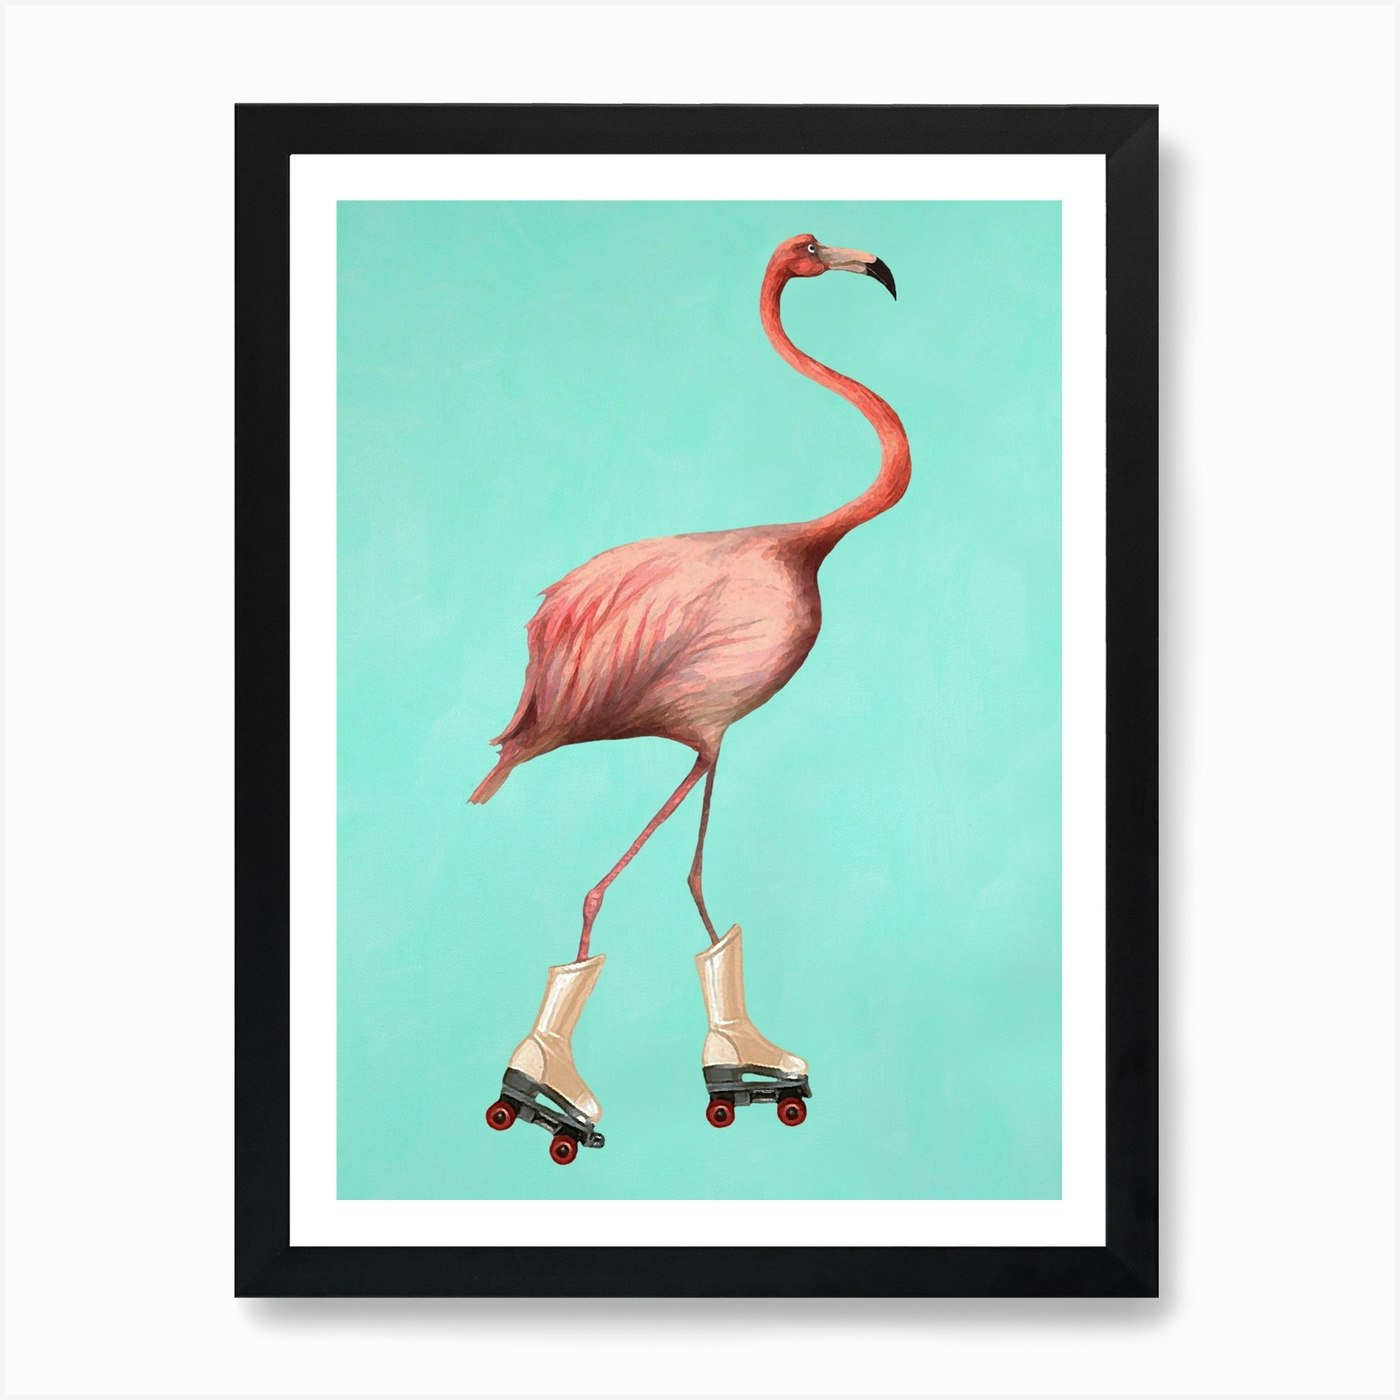 Rollerskate Flamingo Art Print by Coco Deparis - Fy